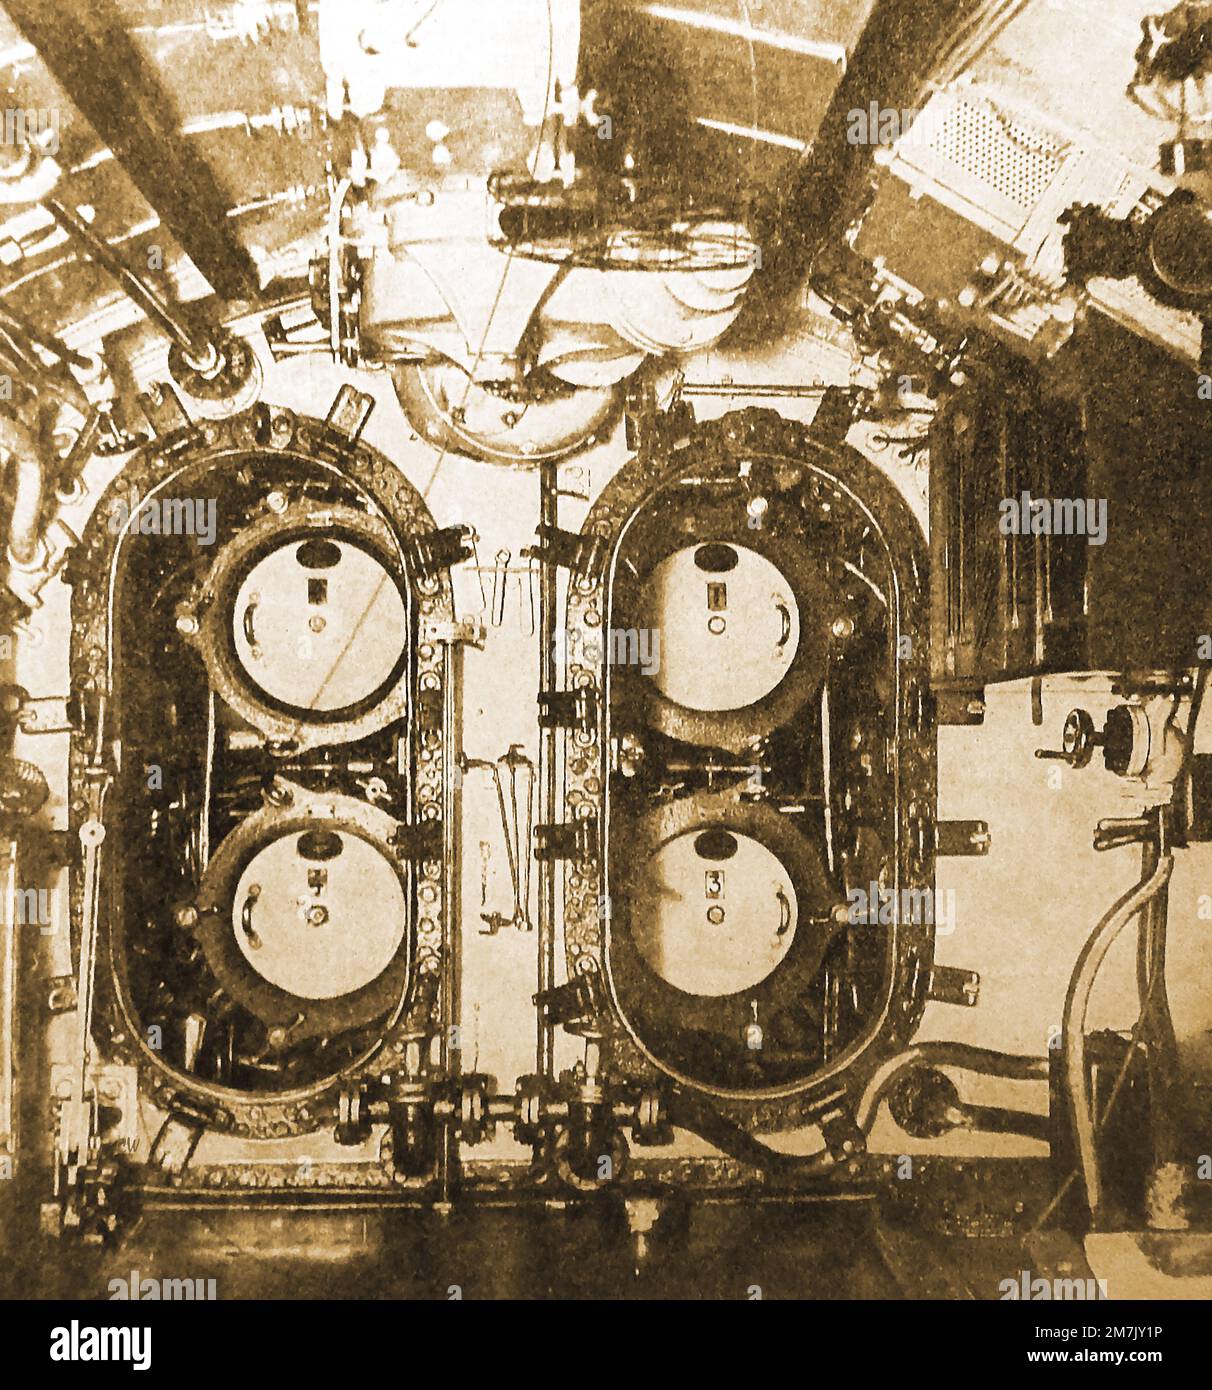 Foto de 1930 de la sala de torpedos de un submarino británico Foto de stock